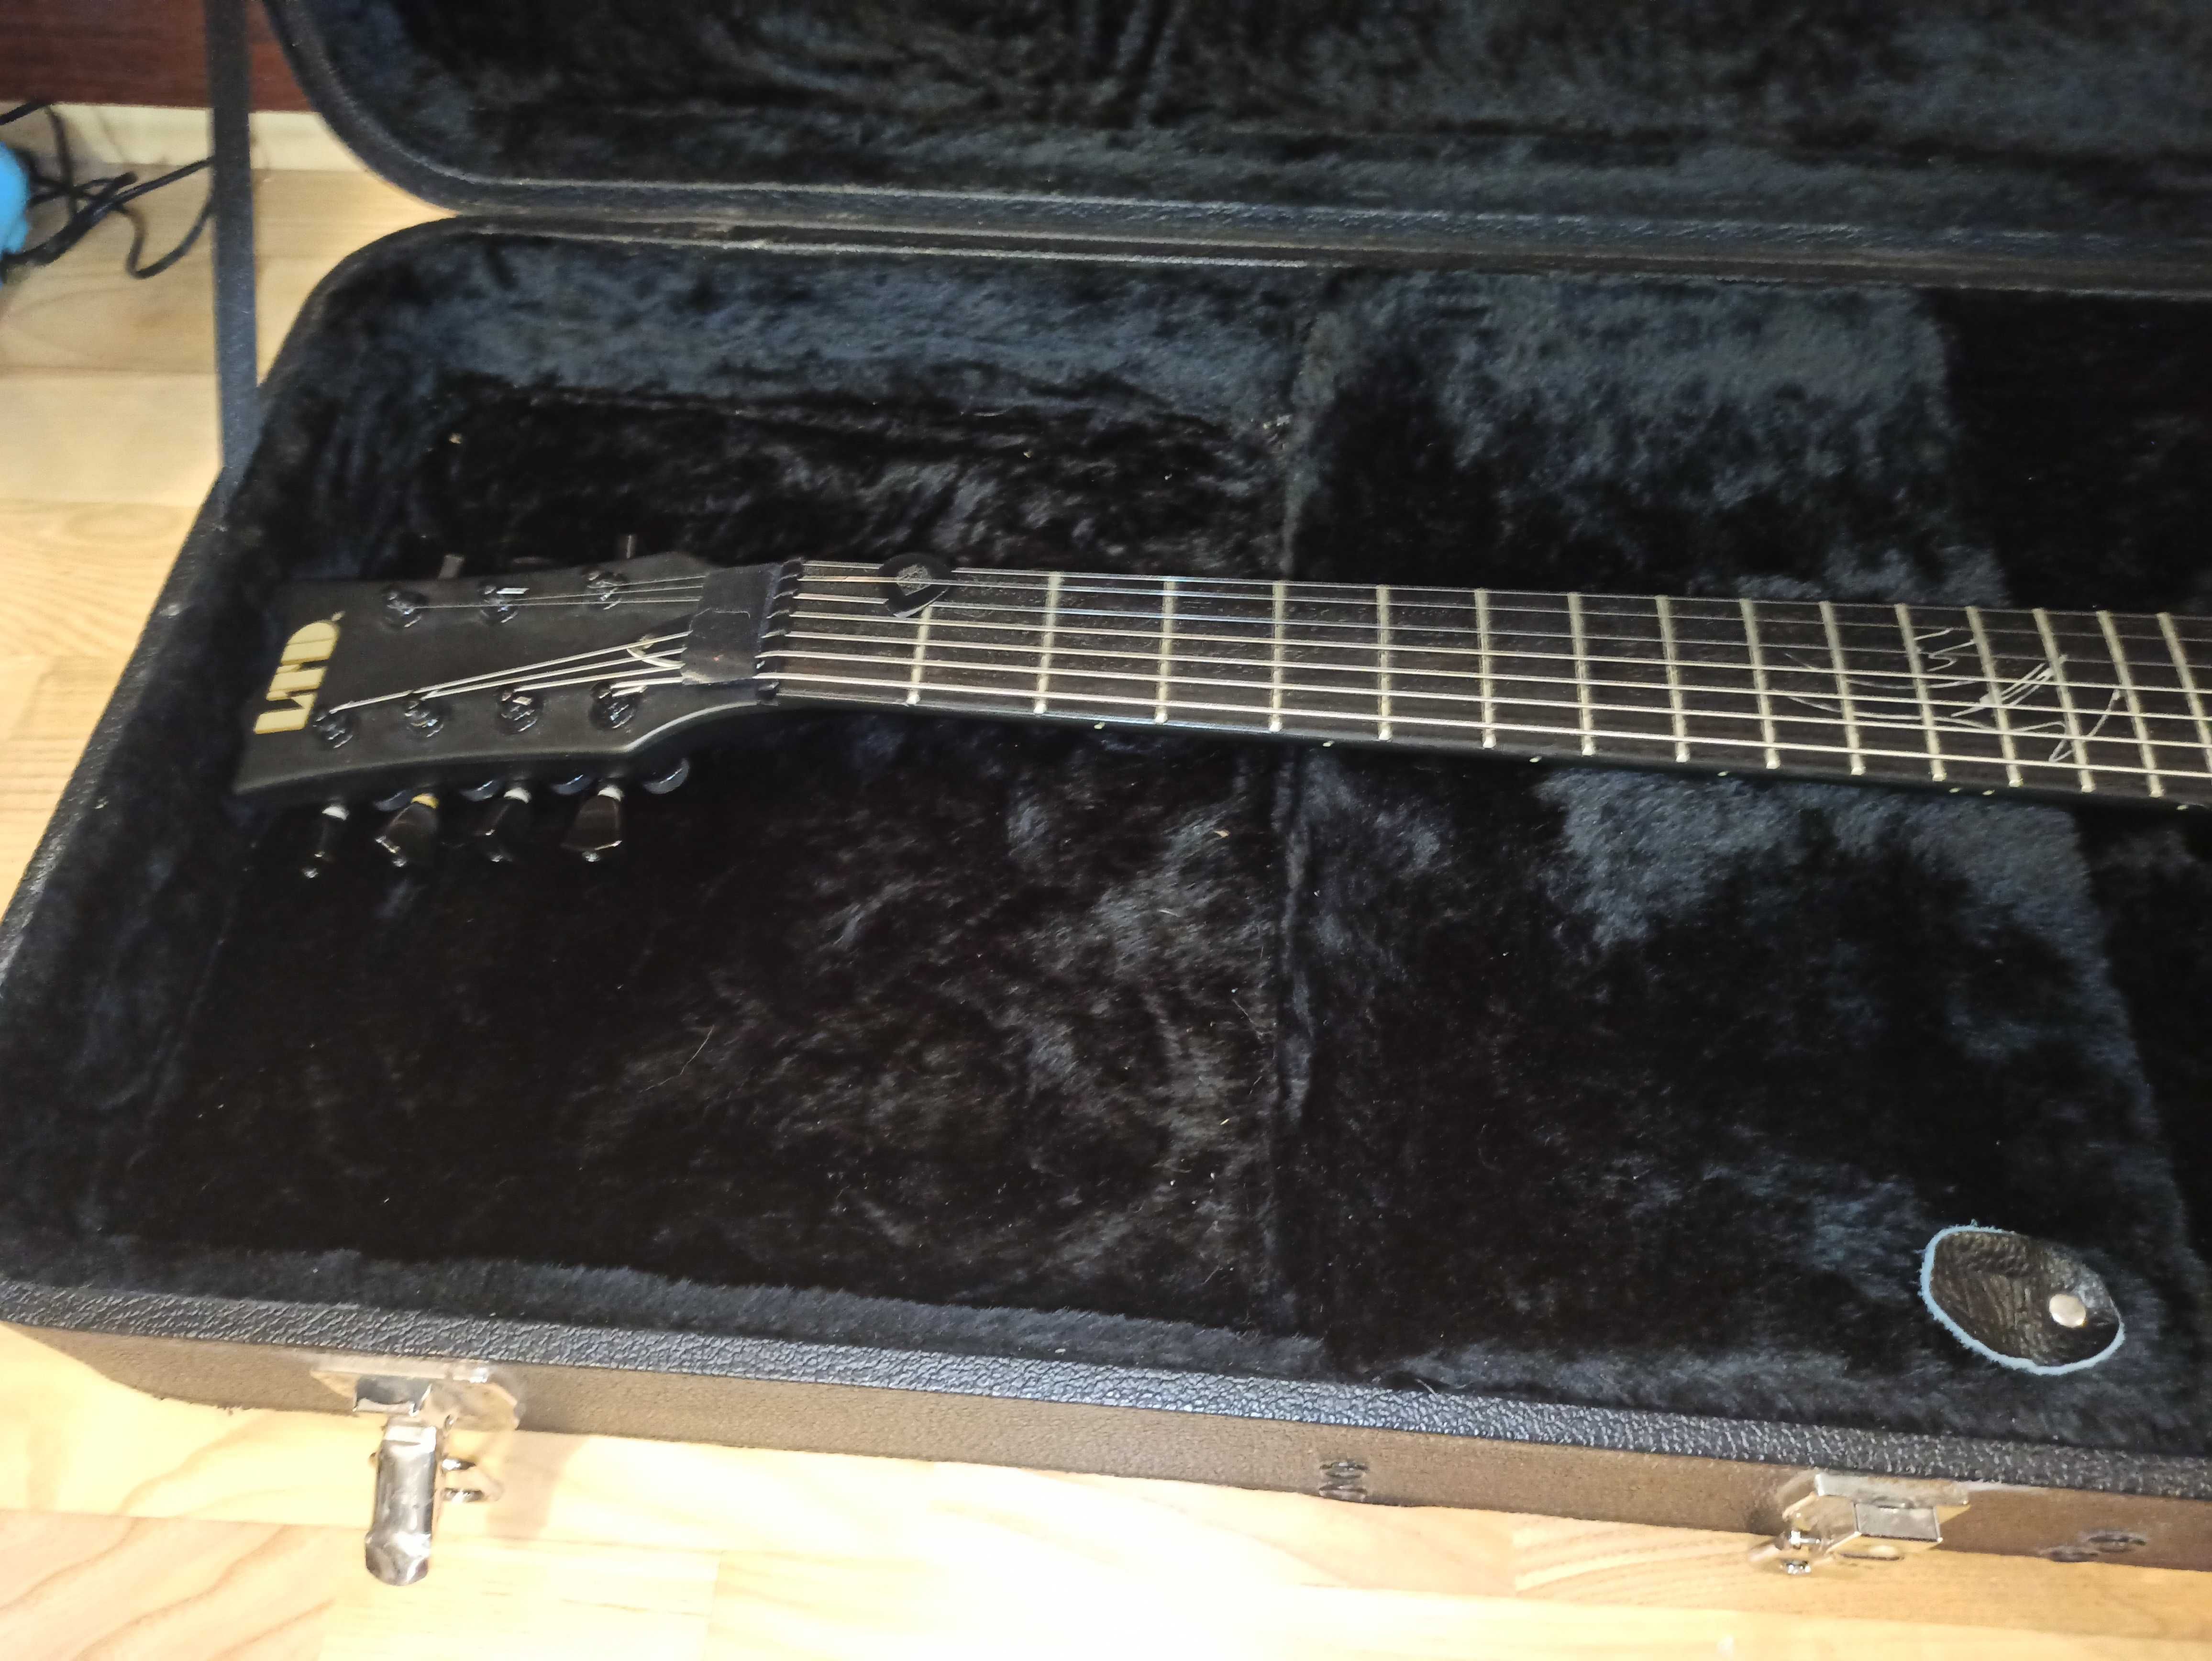 Gitara ESP LTD MKH-7 Made in Korea